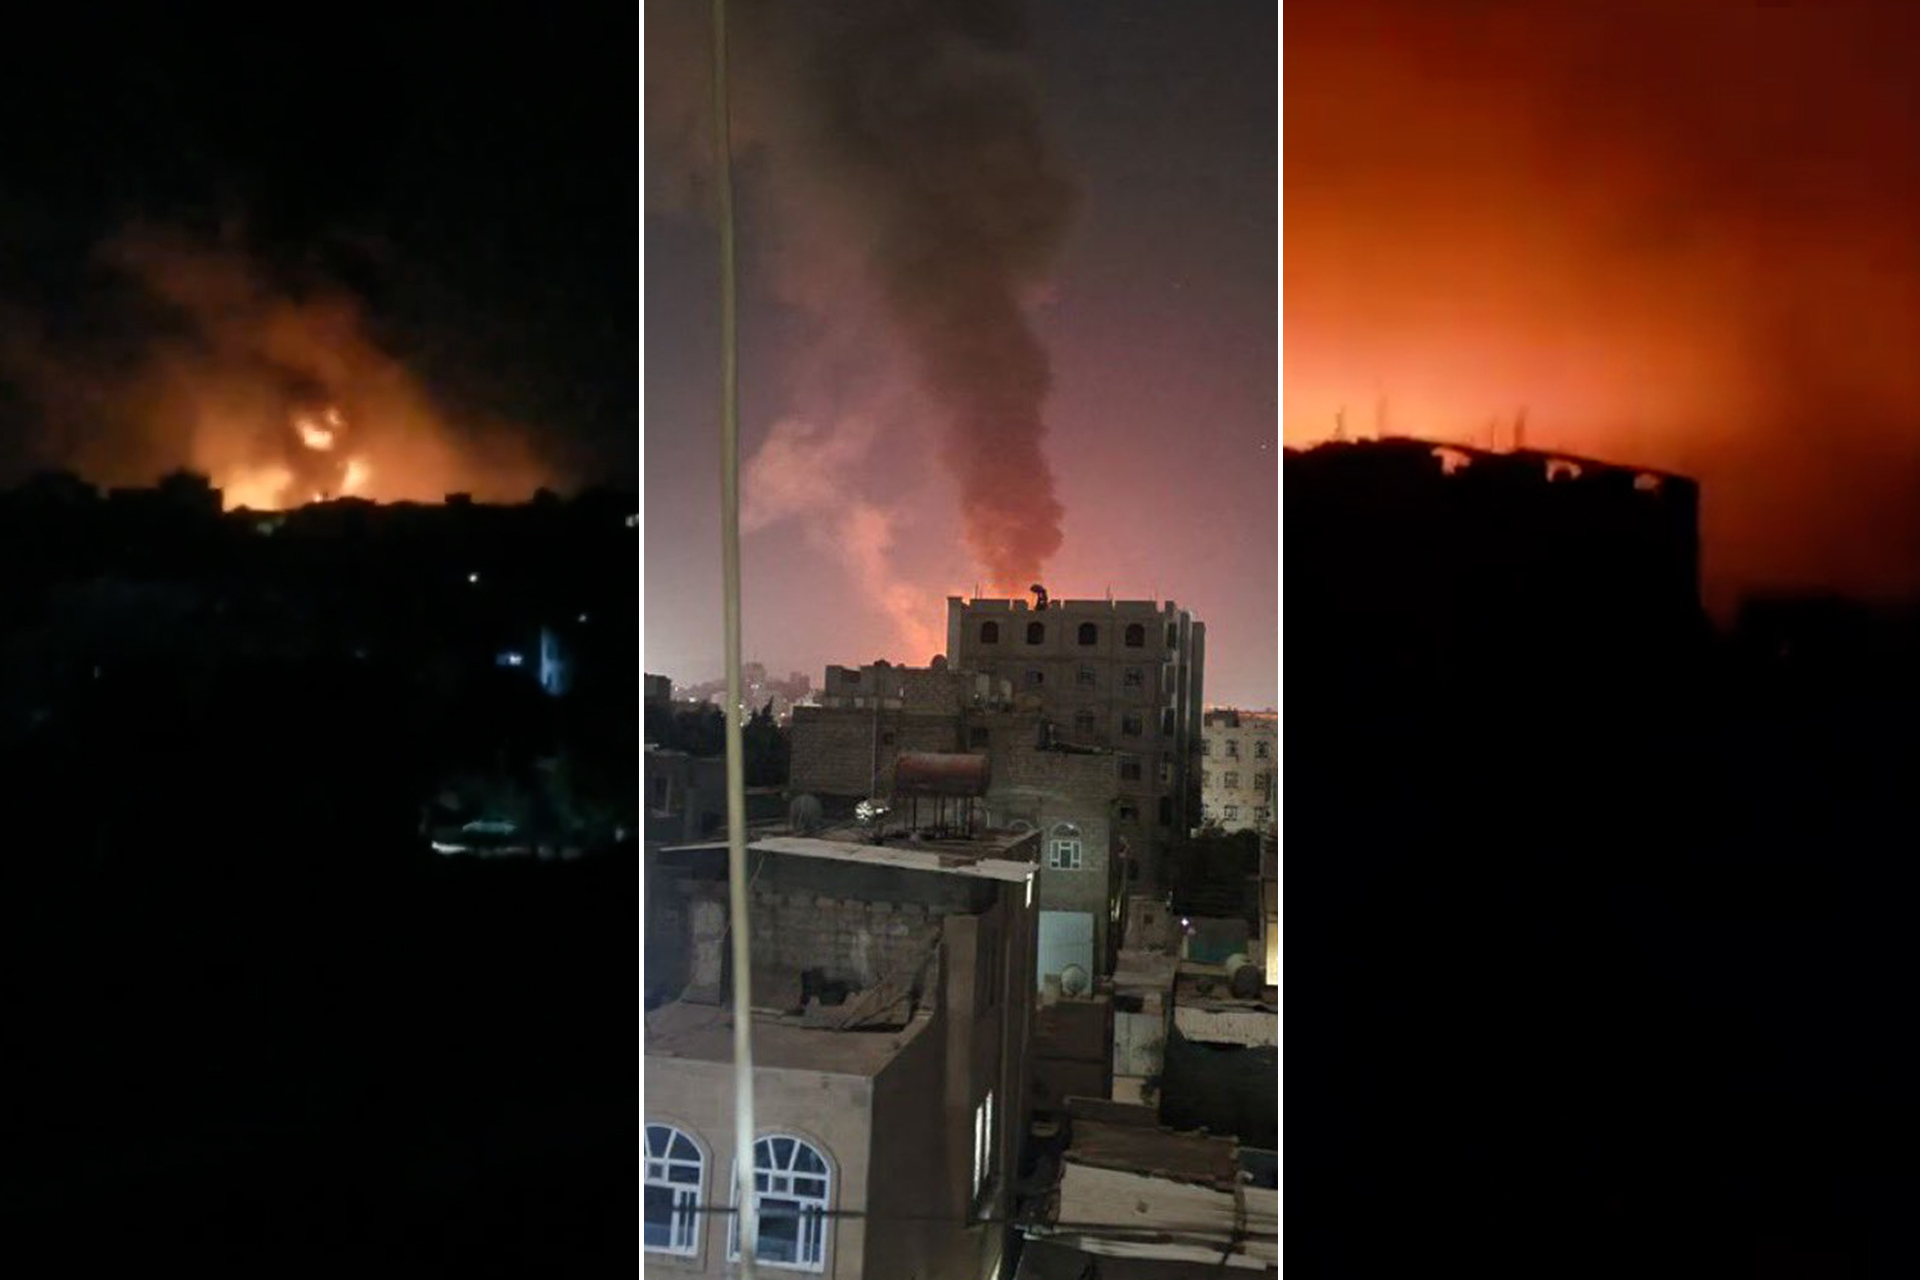 غارات أميركية بريطانية عنيفة على أهداف باليمن من بينها صنعاء | أخبار – البوكس نيوز